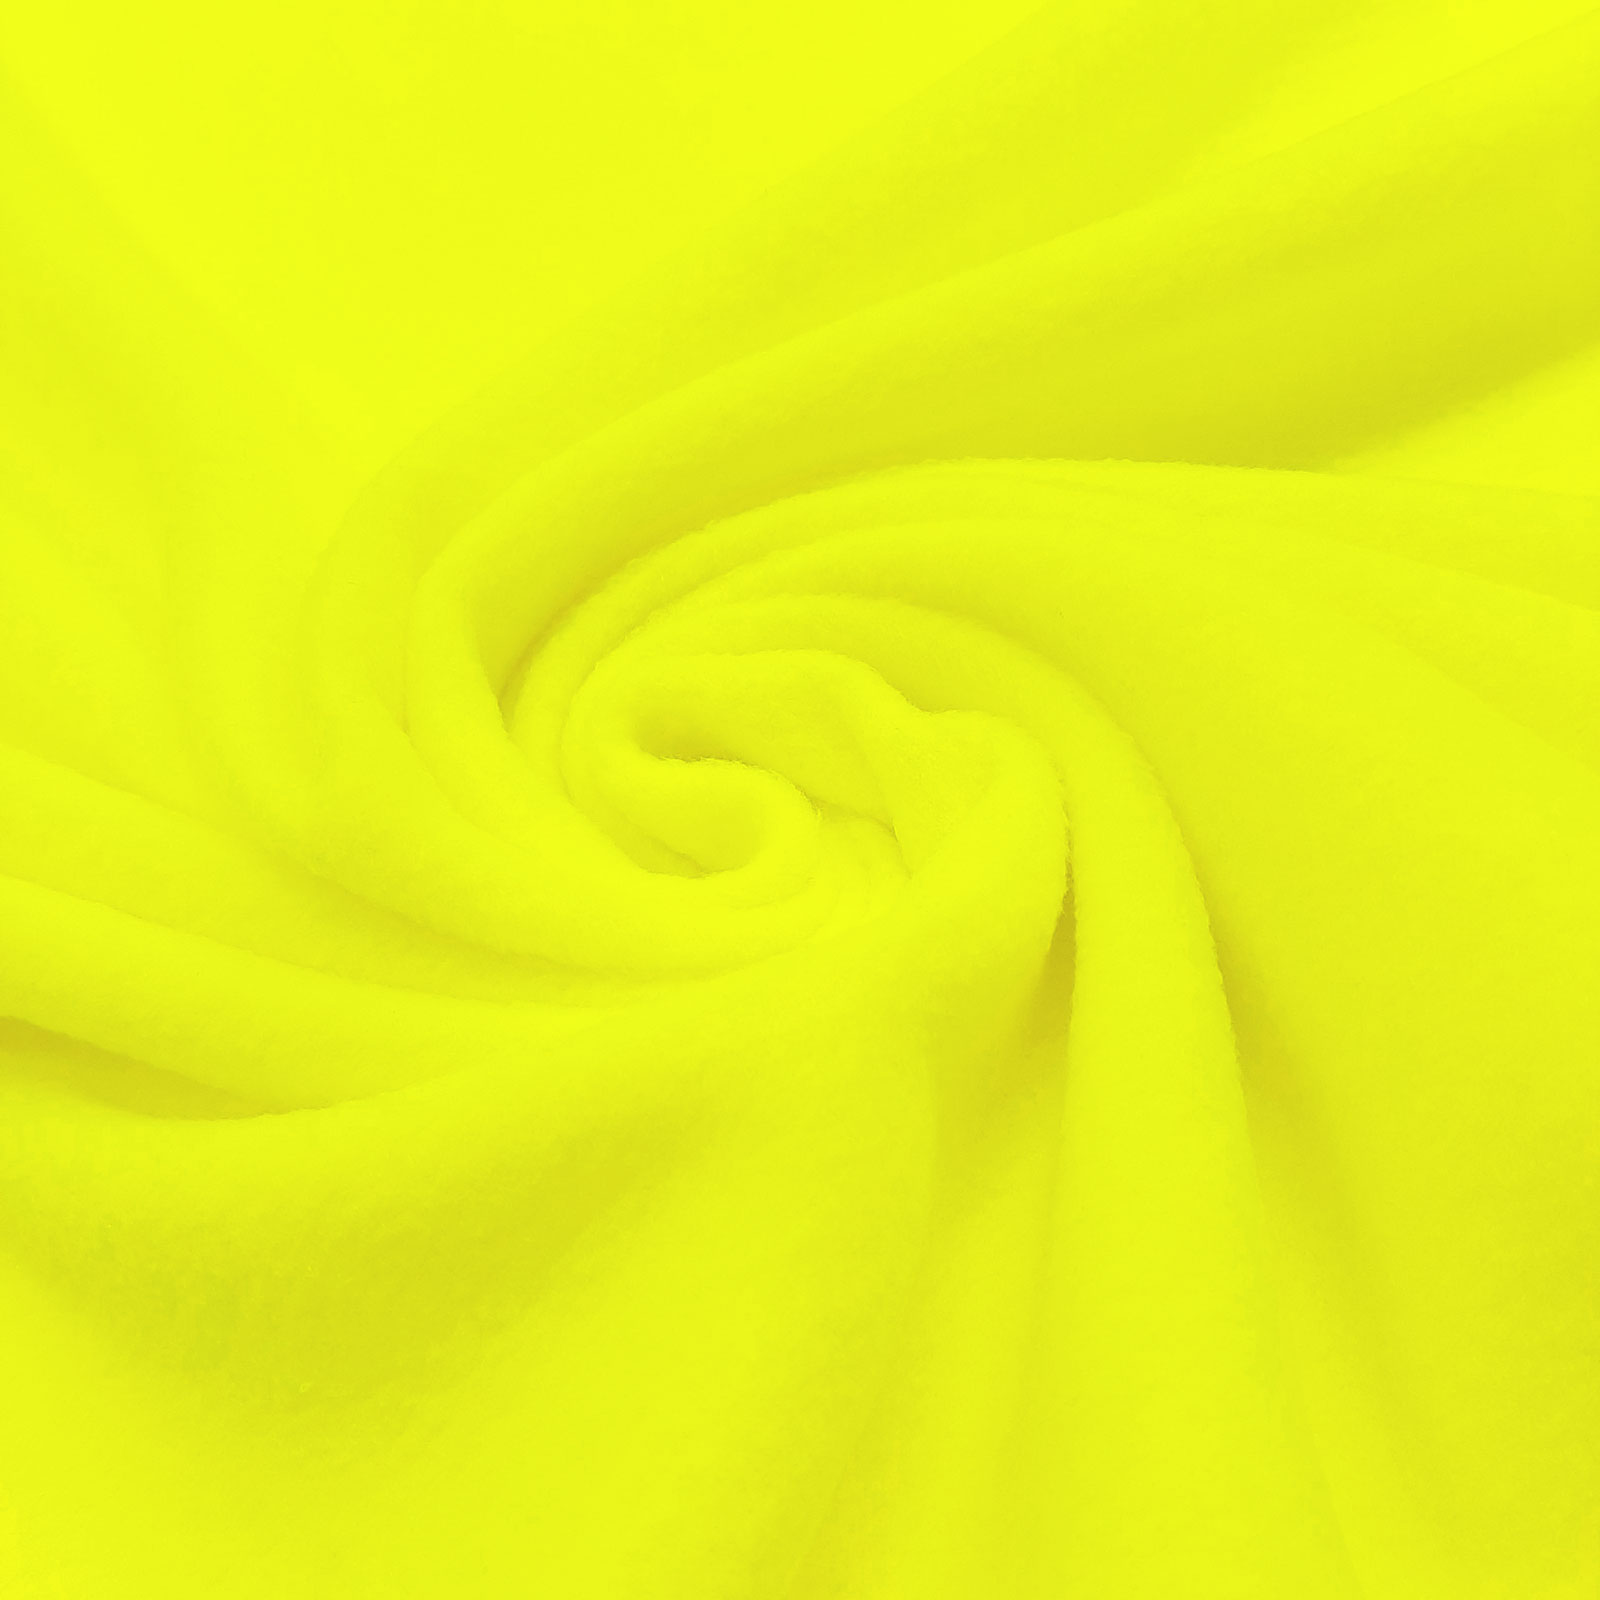 Polarfleece – Forro polar (cores fluorescente) - Amarelo néon